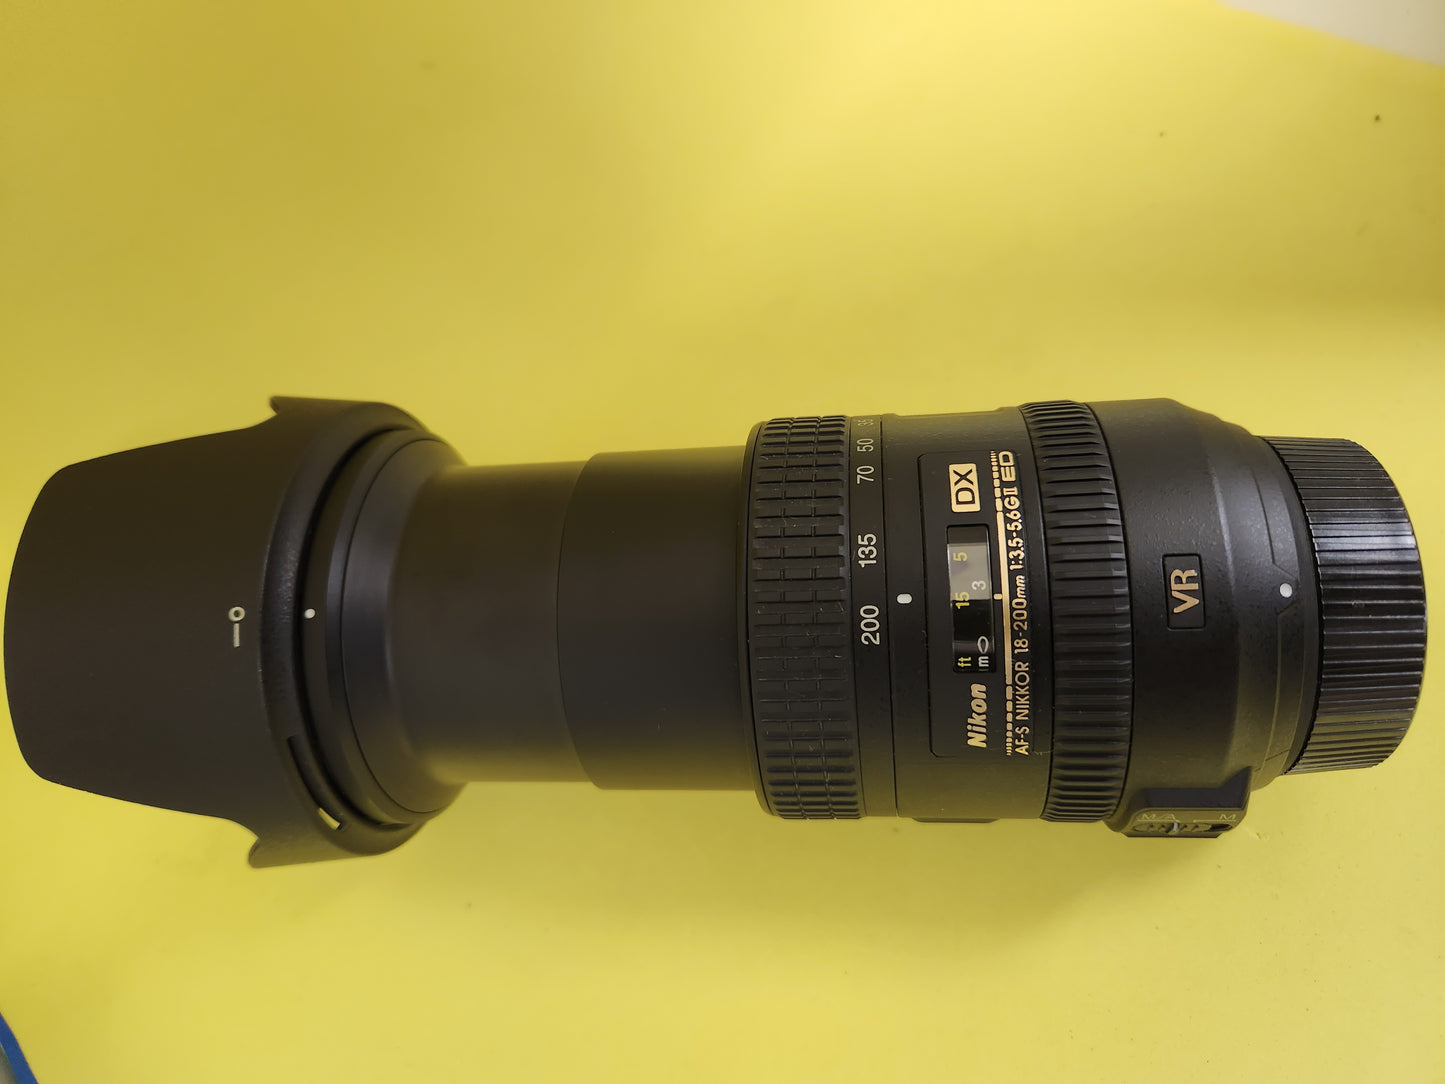 Nikon DX lens AF-S nikkor 18-200mm 1:3.5-5.6 G ll ED